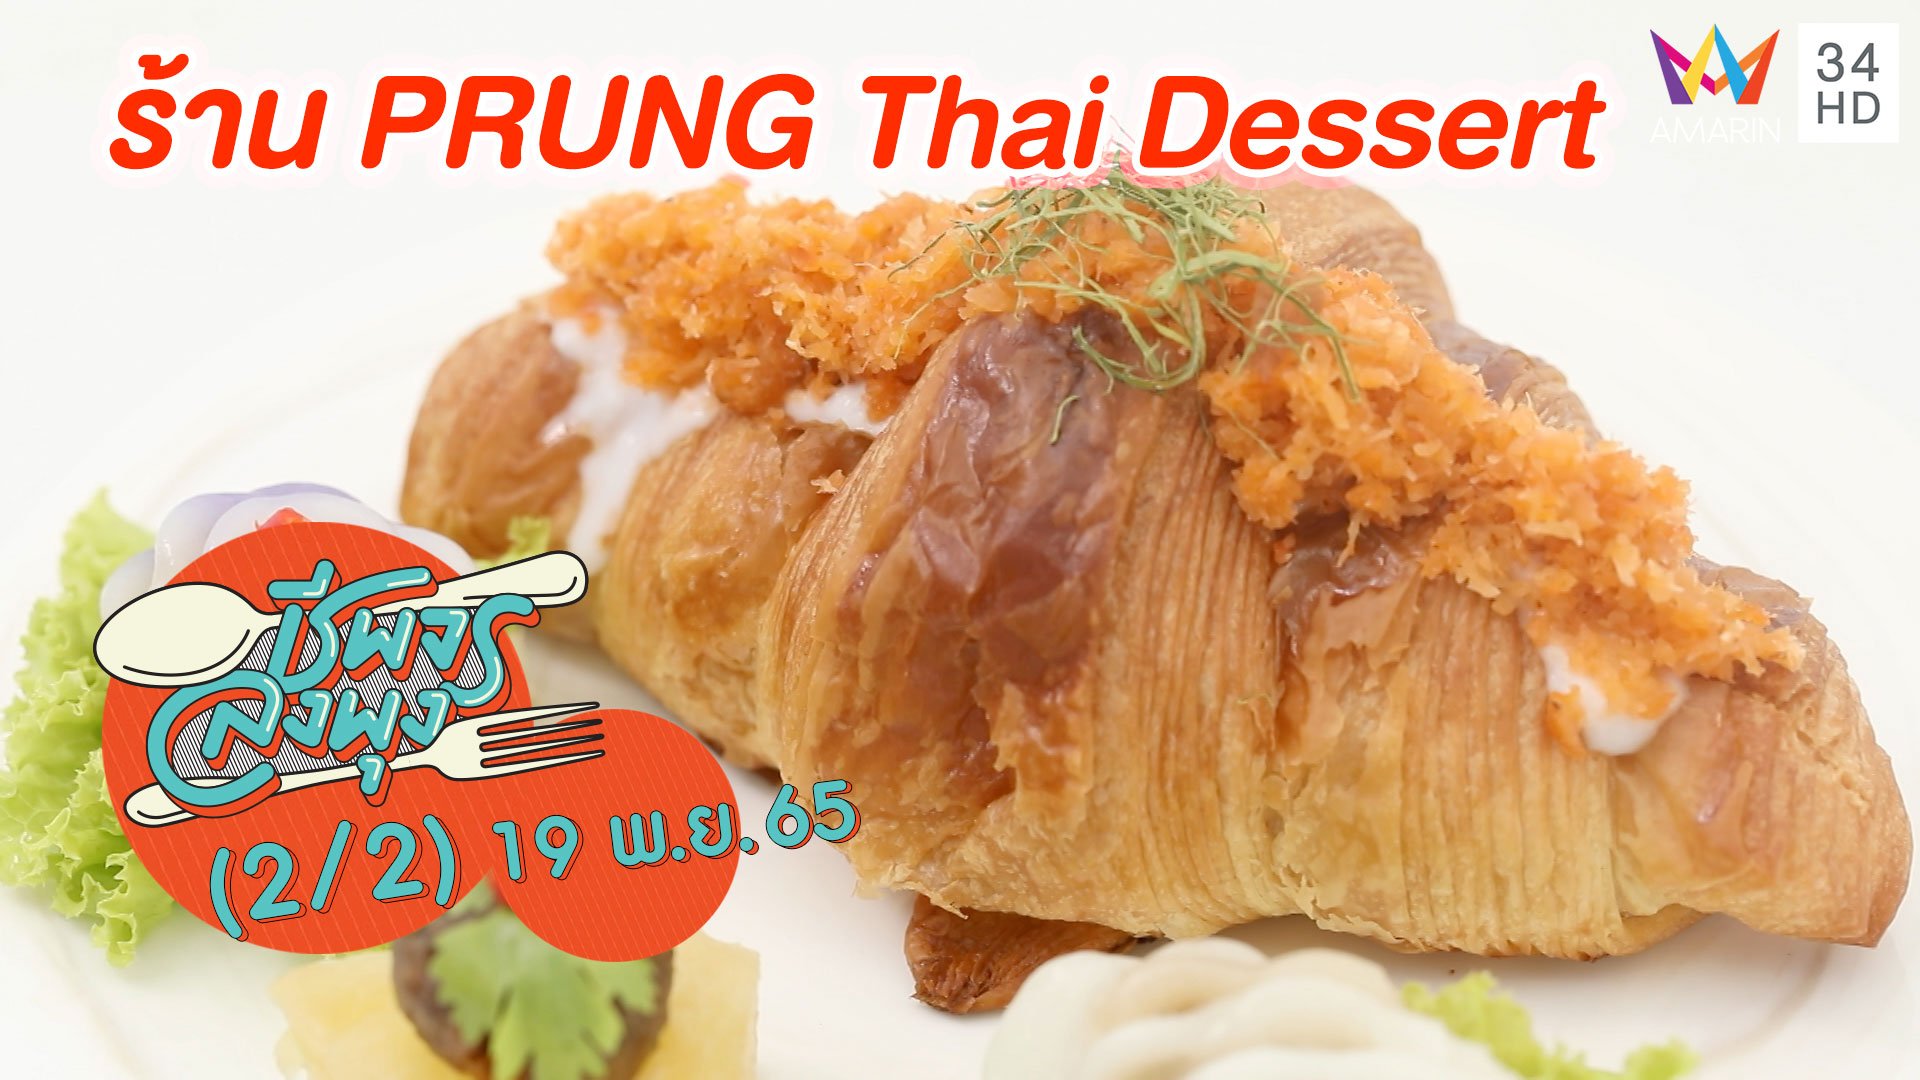 ขนมไทยดั้งเดิมร่วมสมัย @ ร้าน PRUNG Thai Dessert | ชีพจรลงพุง | 19 พ.ย. 65 (2/2) | AMARIN TVHD34